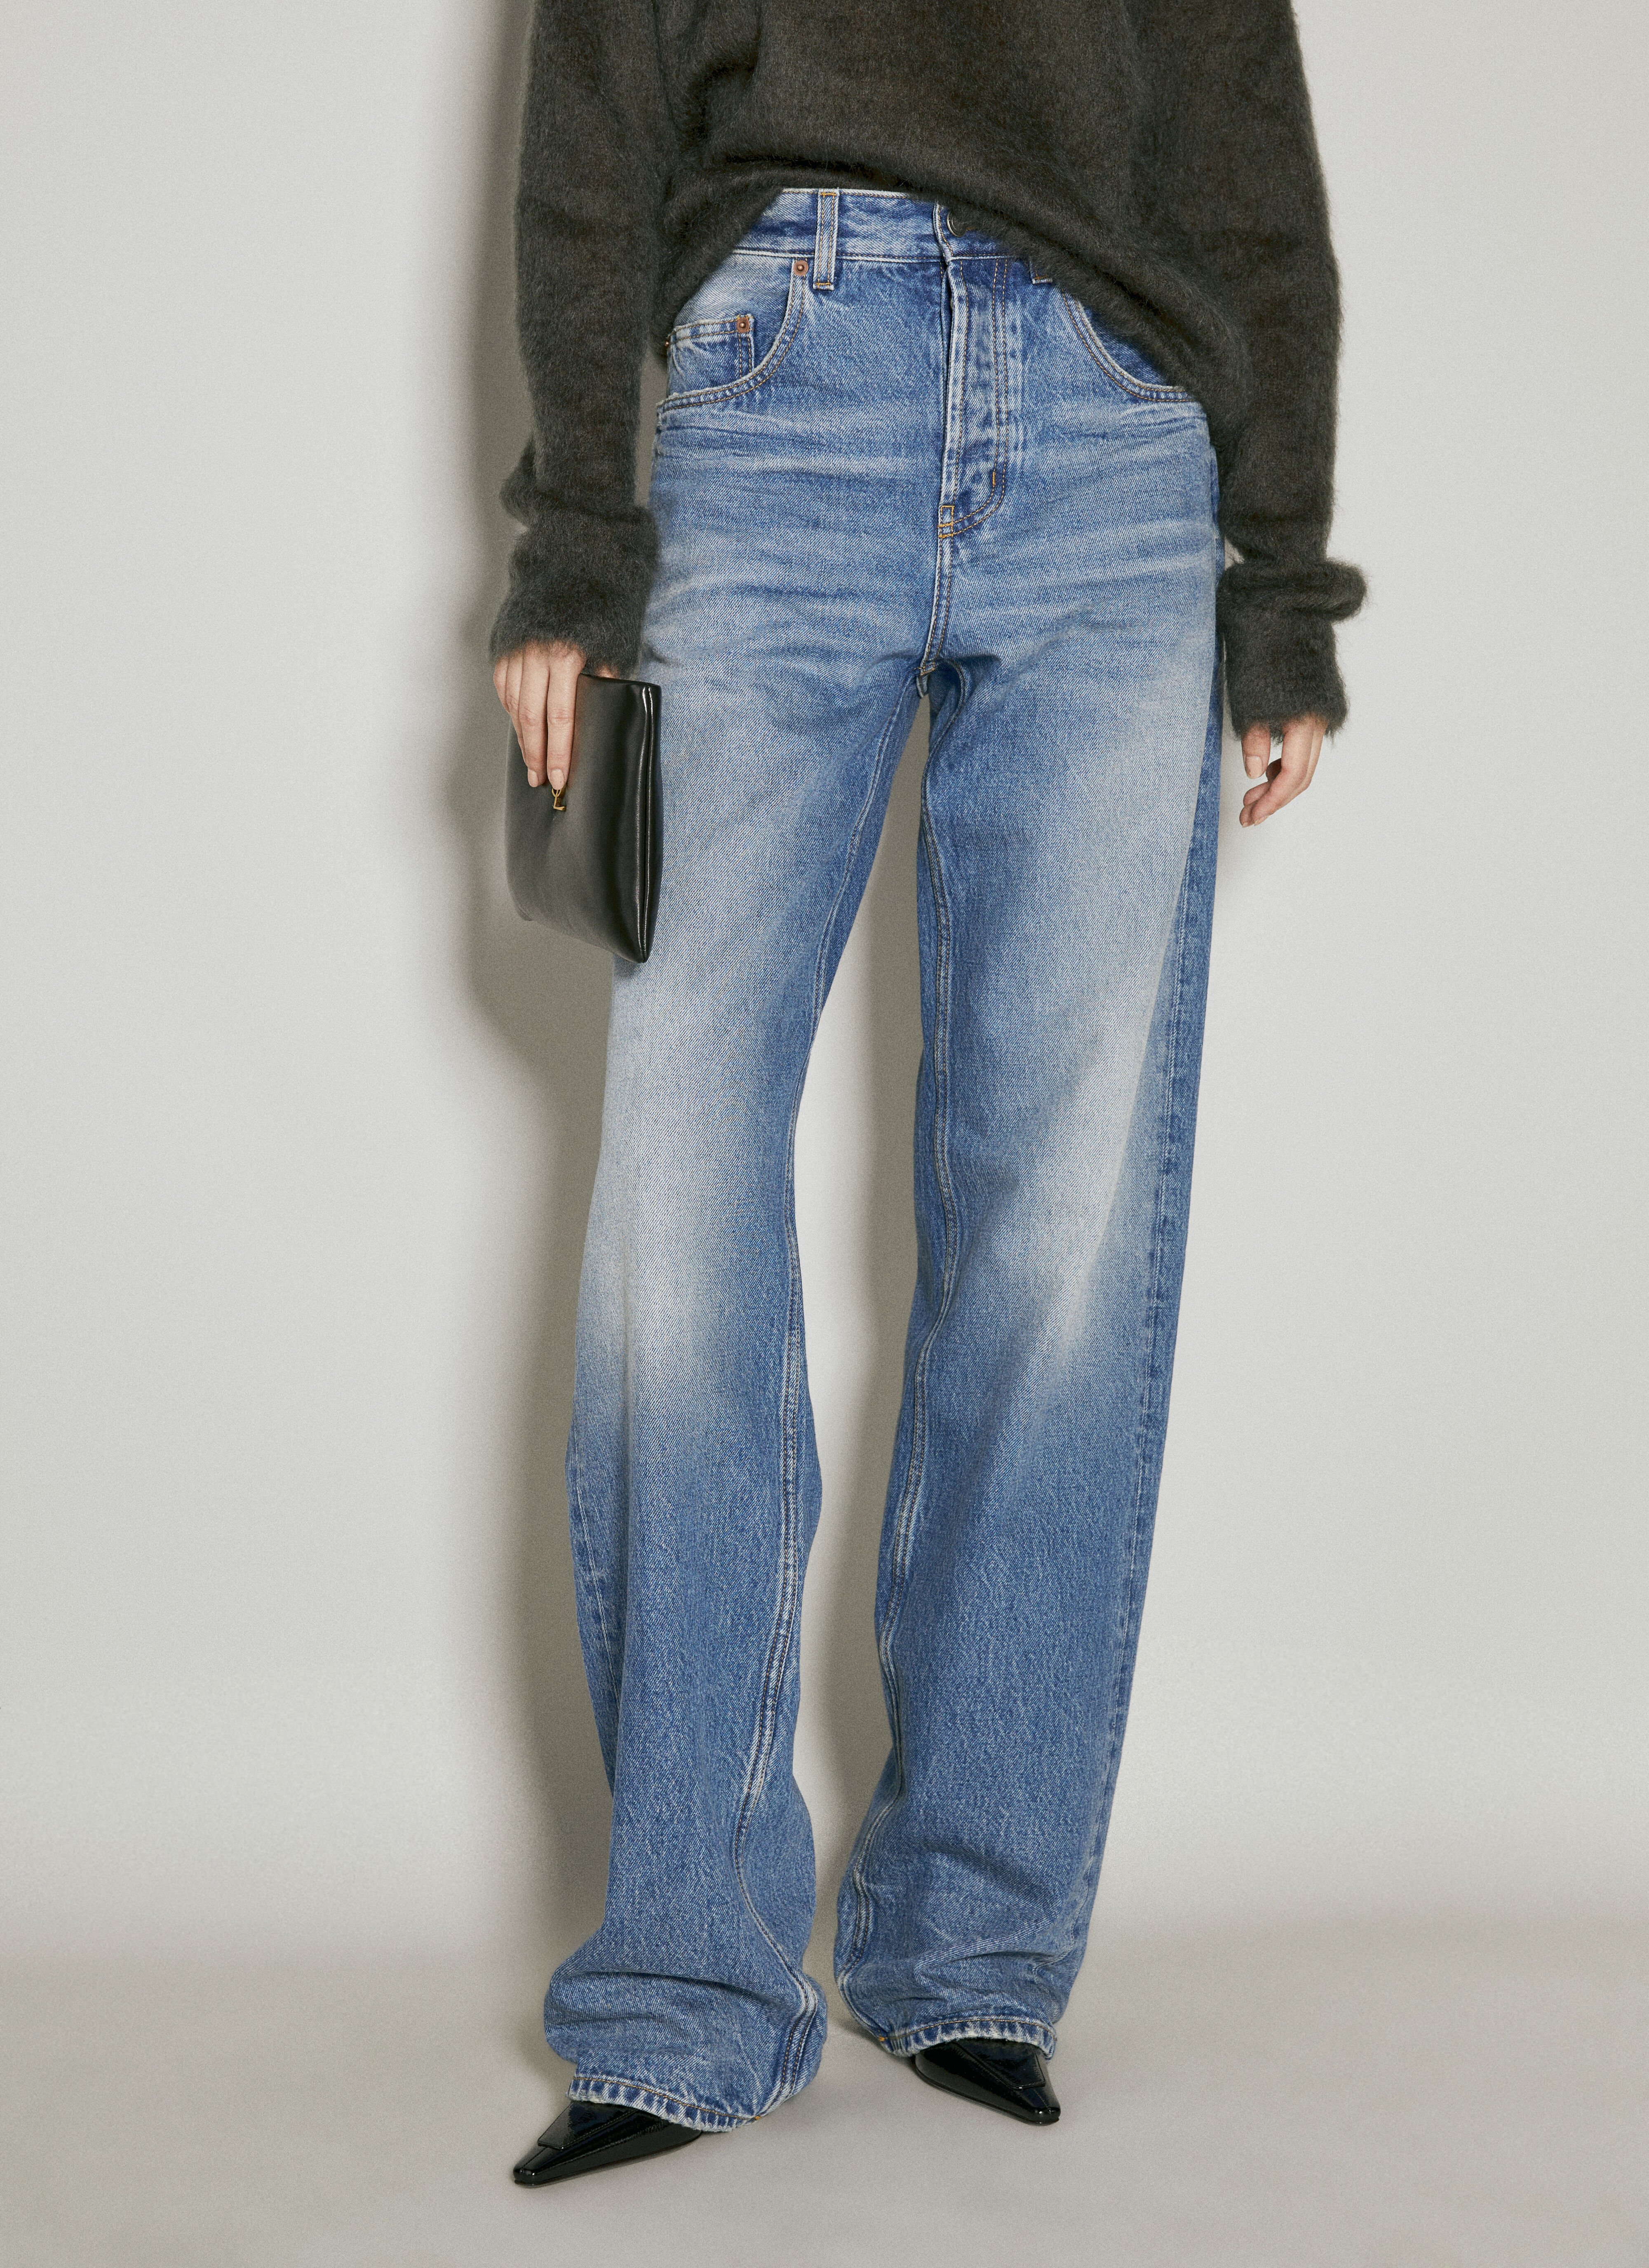 Burberry Long Extreme Baggy Jeans Blue bur0255050